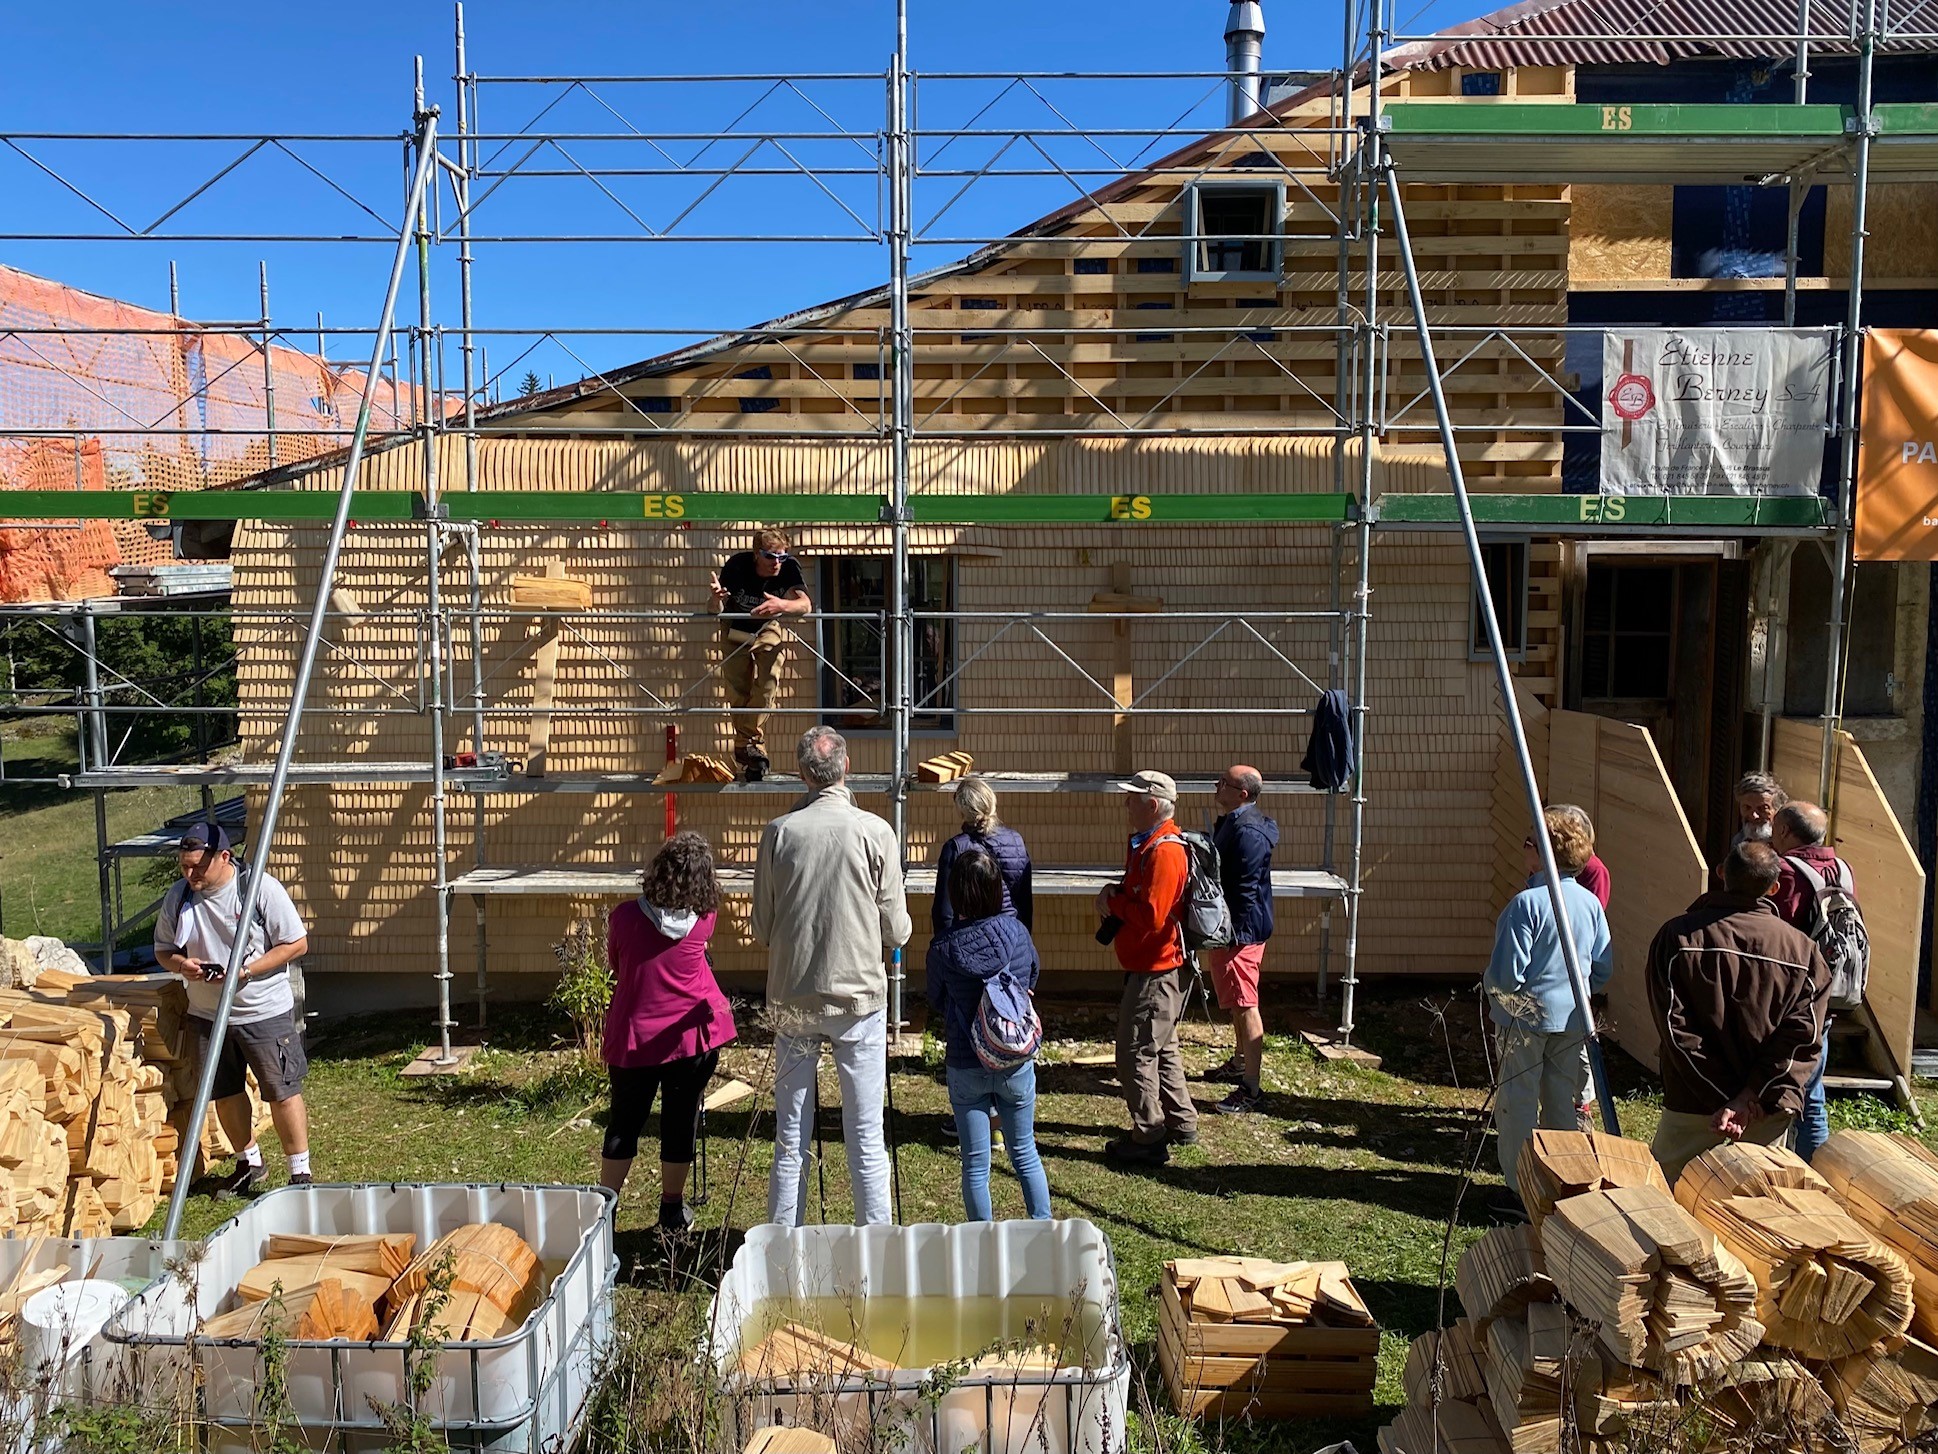 Sur la figure, on peut voir un bâtiment en bois en cours de restauration par plusieurs personnes. 